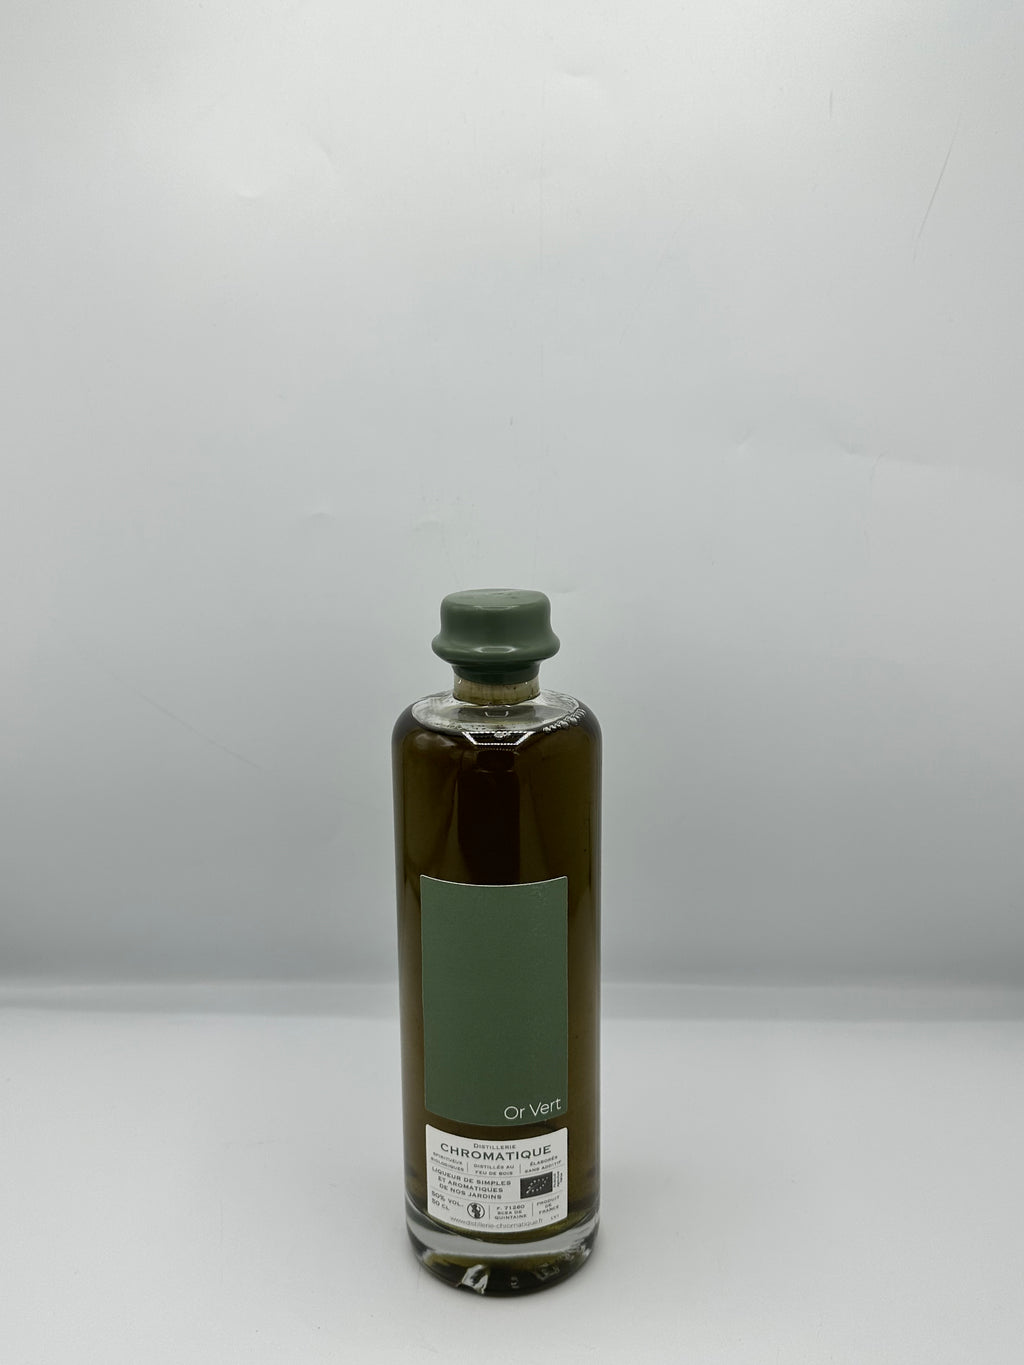 Liqueur "Or Vert" 50° 50Cl - Distillerie Chromatique by Guillemot Michel